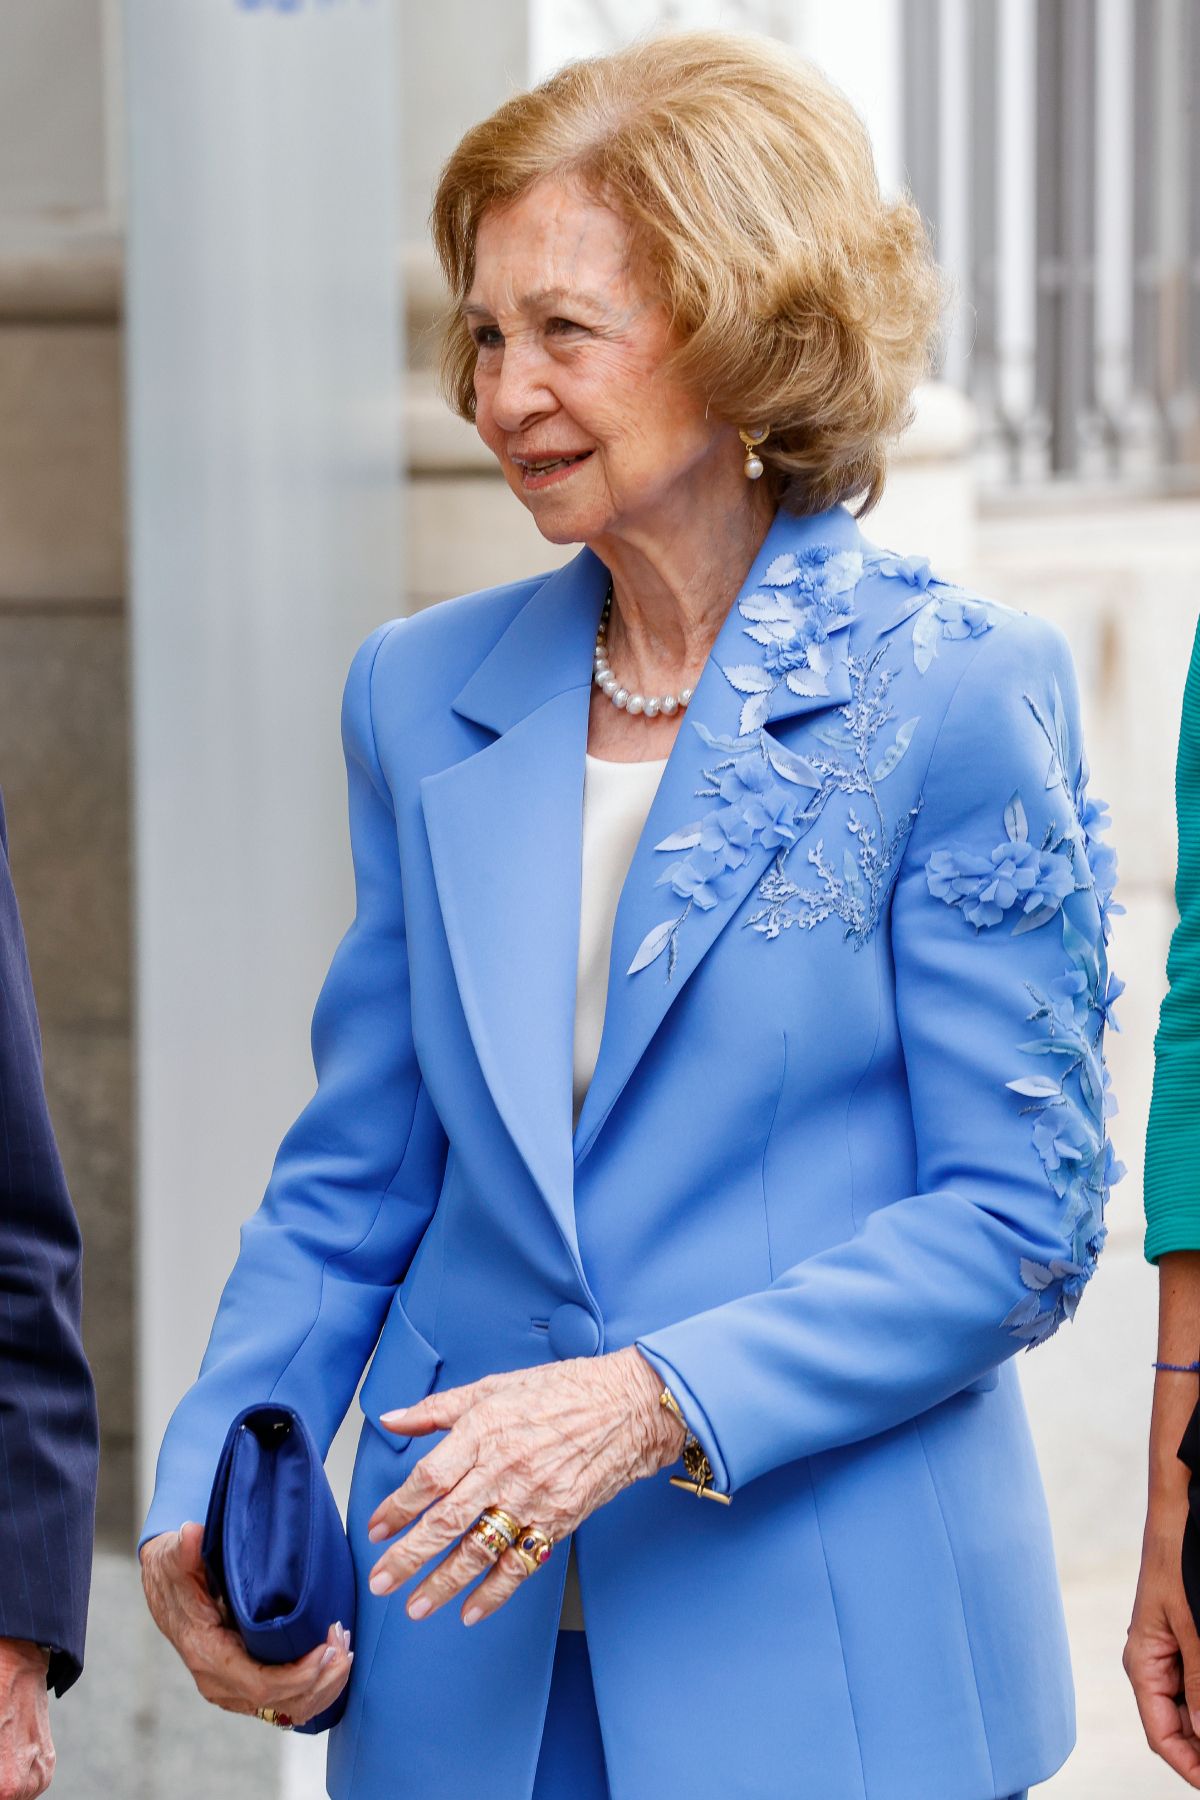 El 'look' reciclado de la reina Sofía